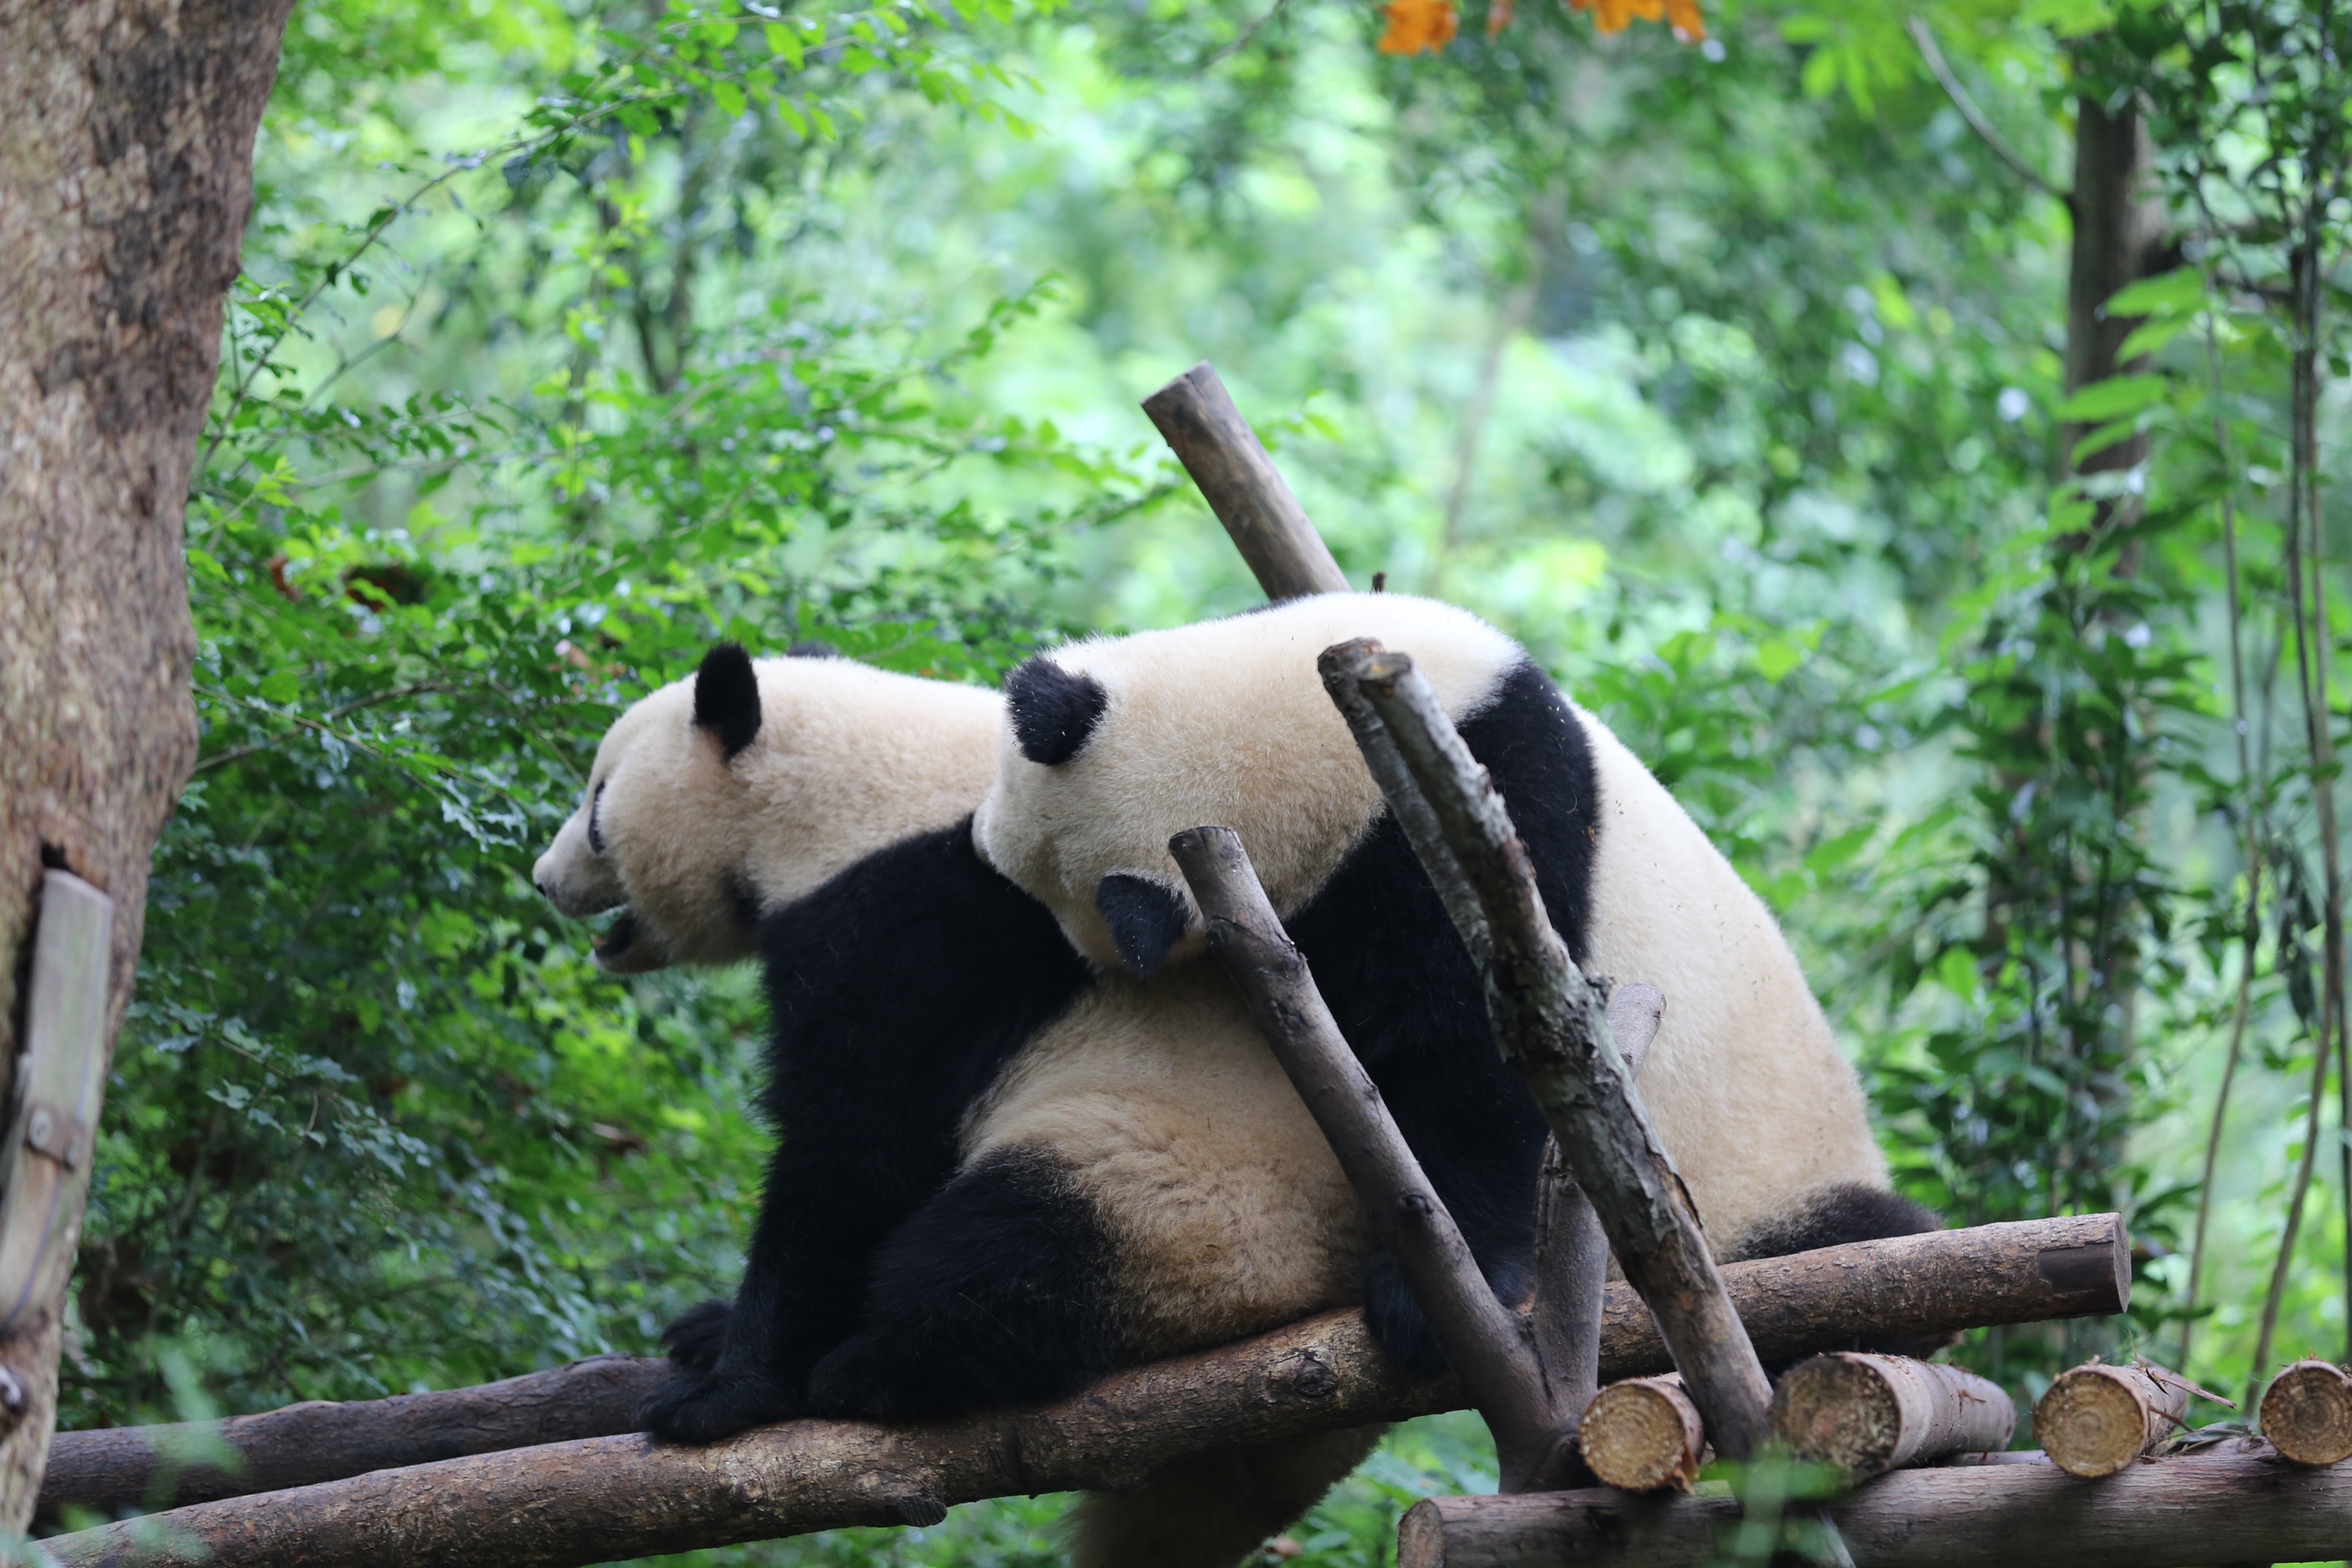 萌萌的大熊猫！很幸运的看到了两只大熊猫玩耍打闹